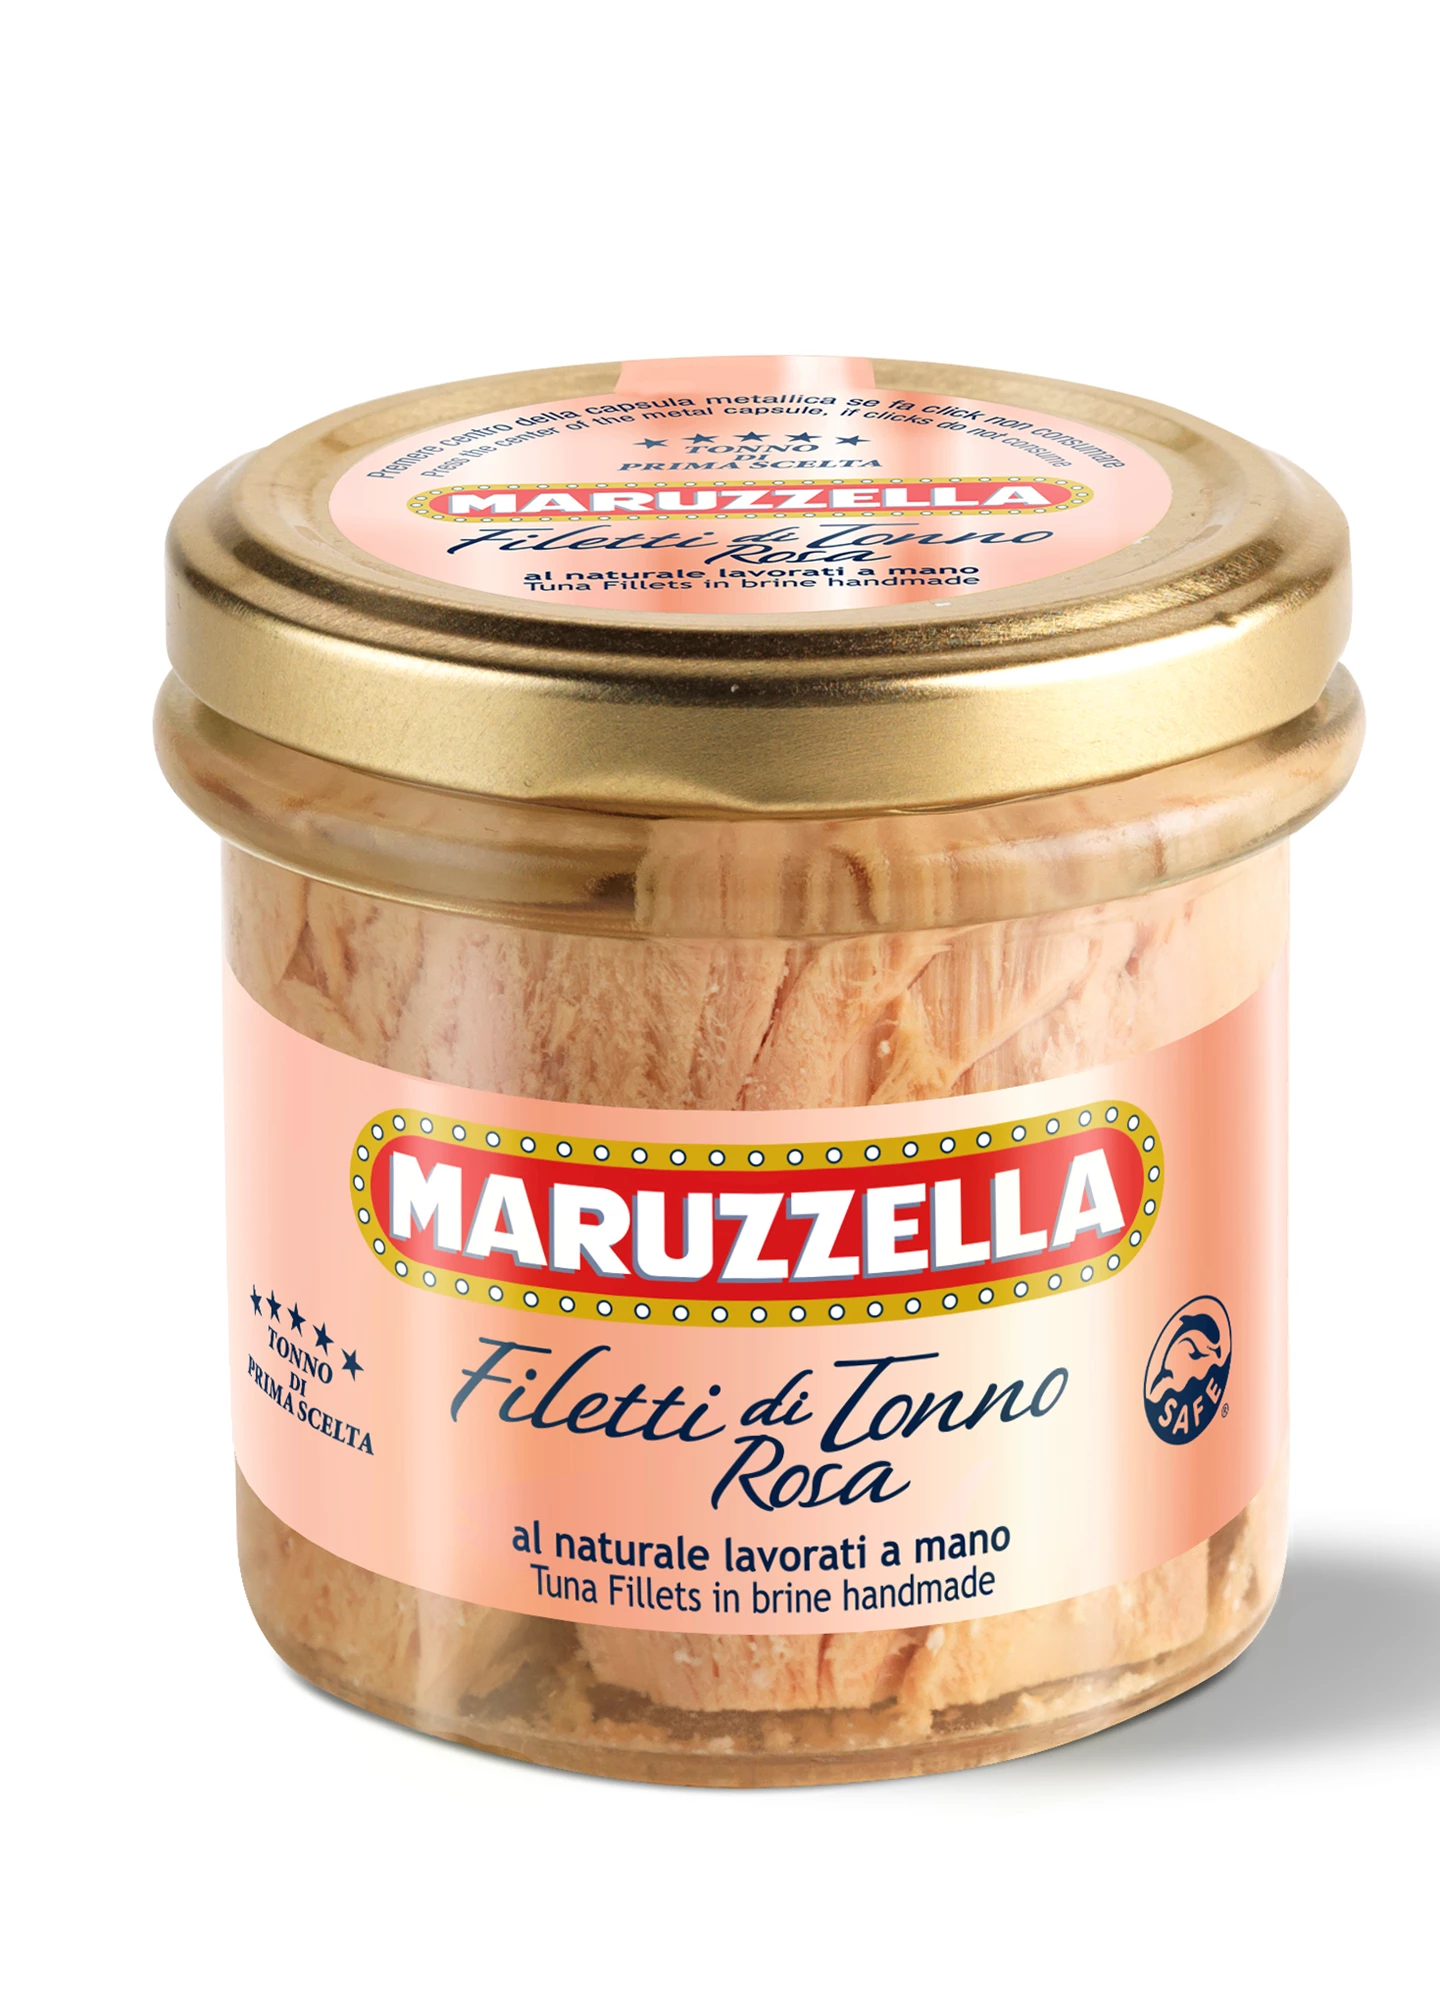 Maruzzella_130g-filetti-tonno-rosa-maruzzella